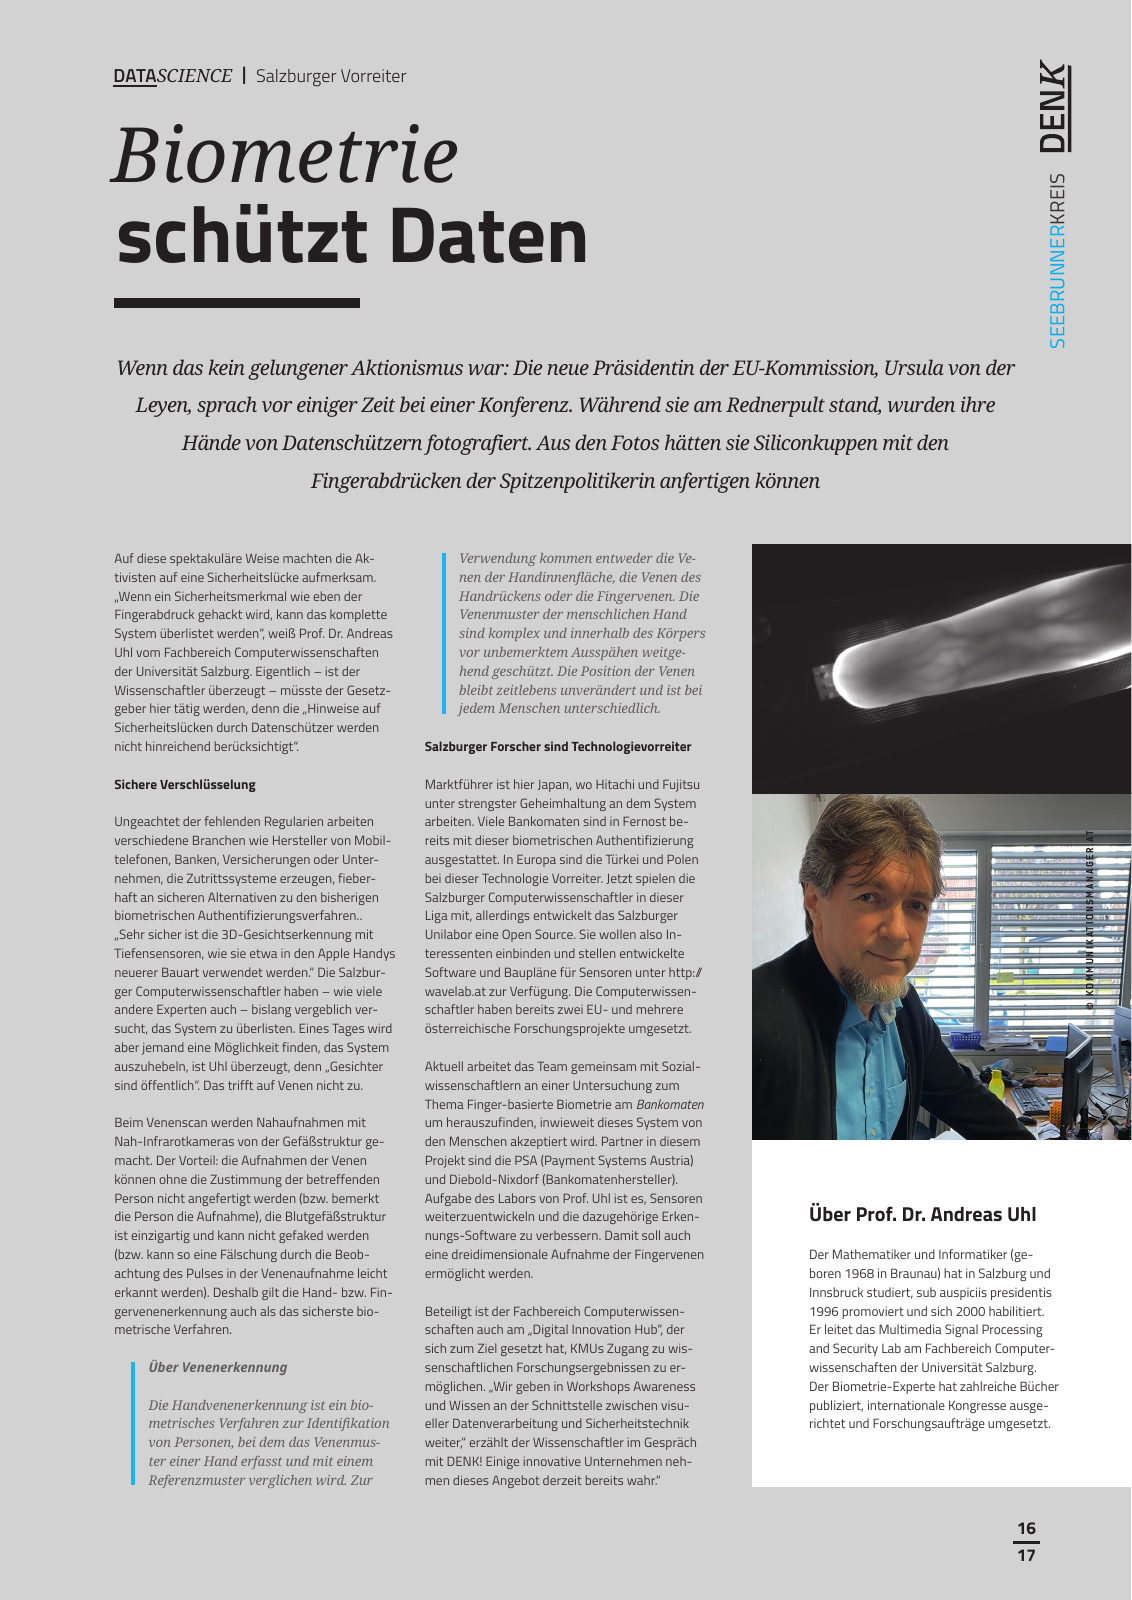 Vorschau Denk - Edition 05/2020 Seite 17